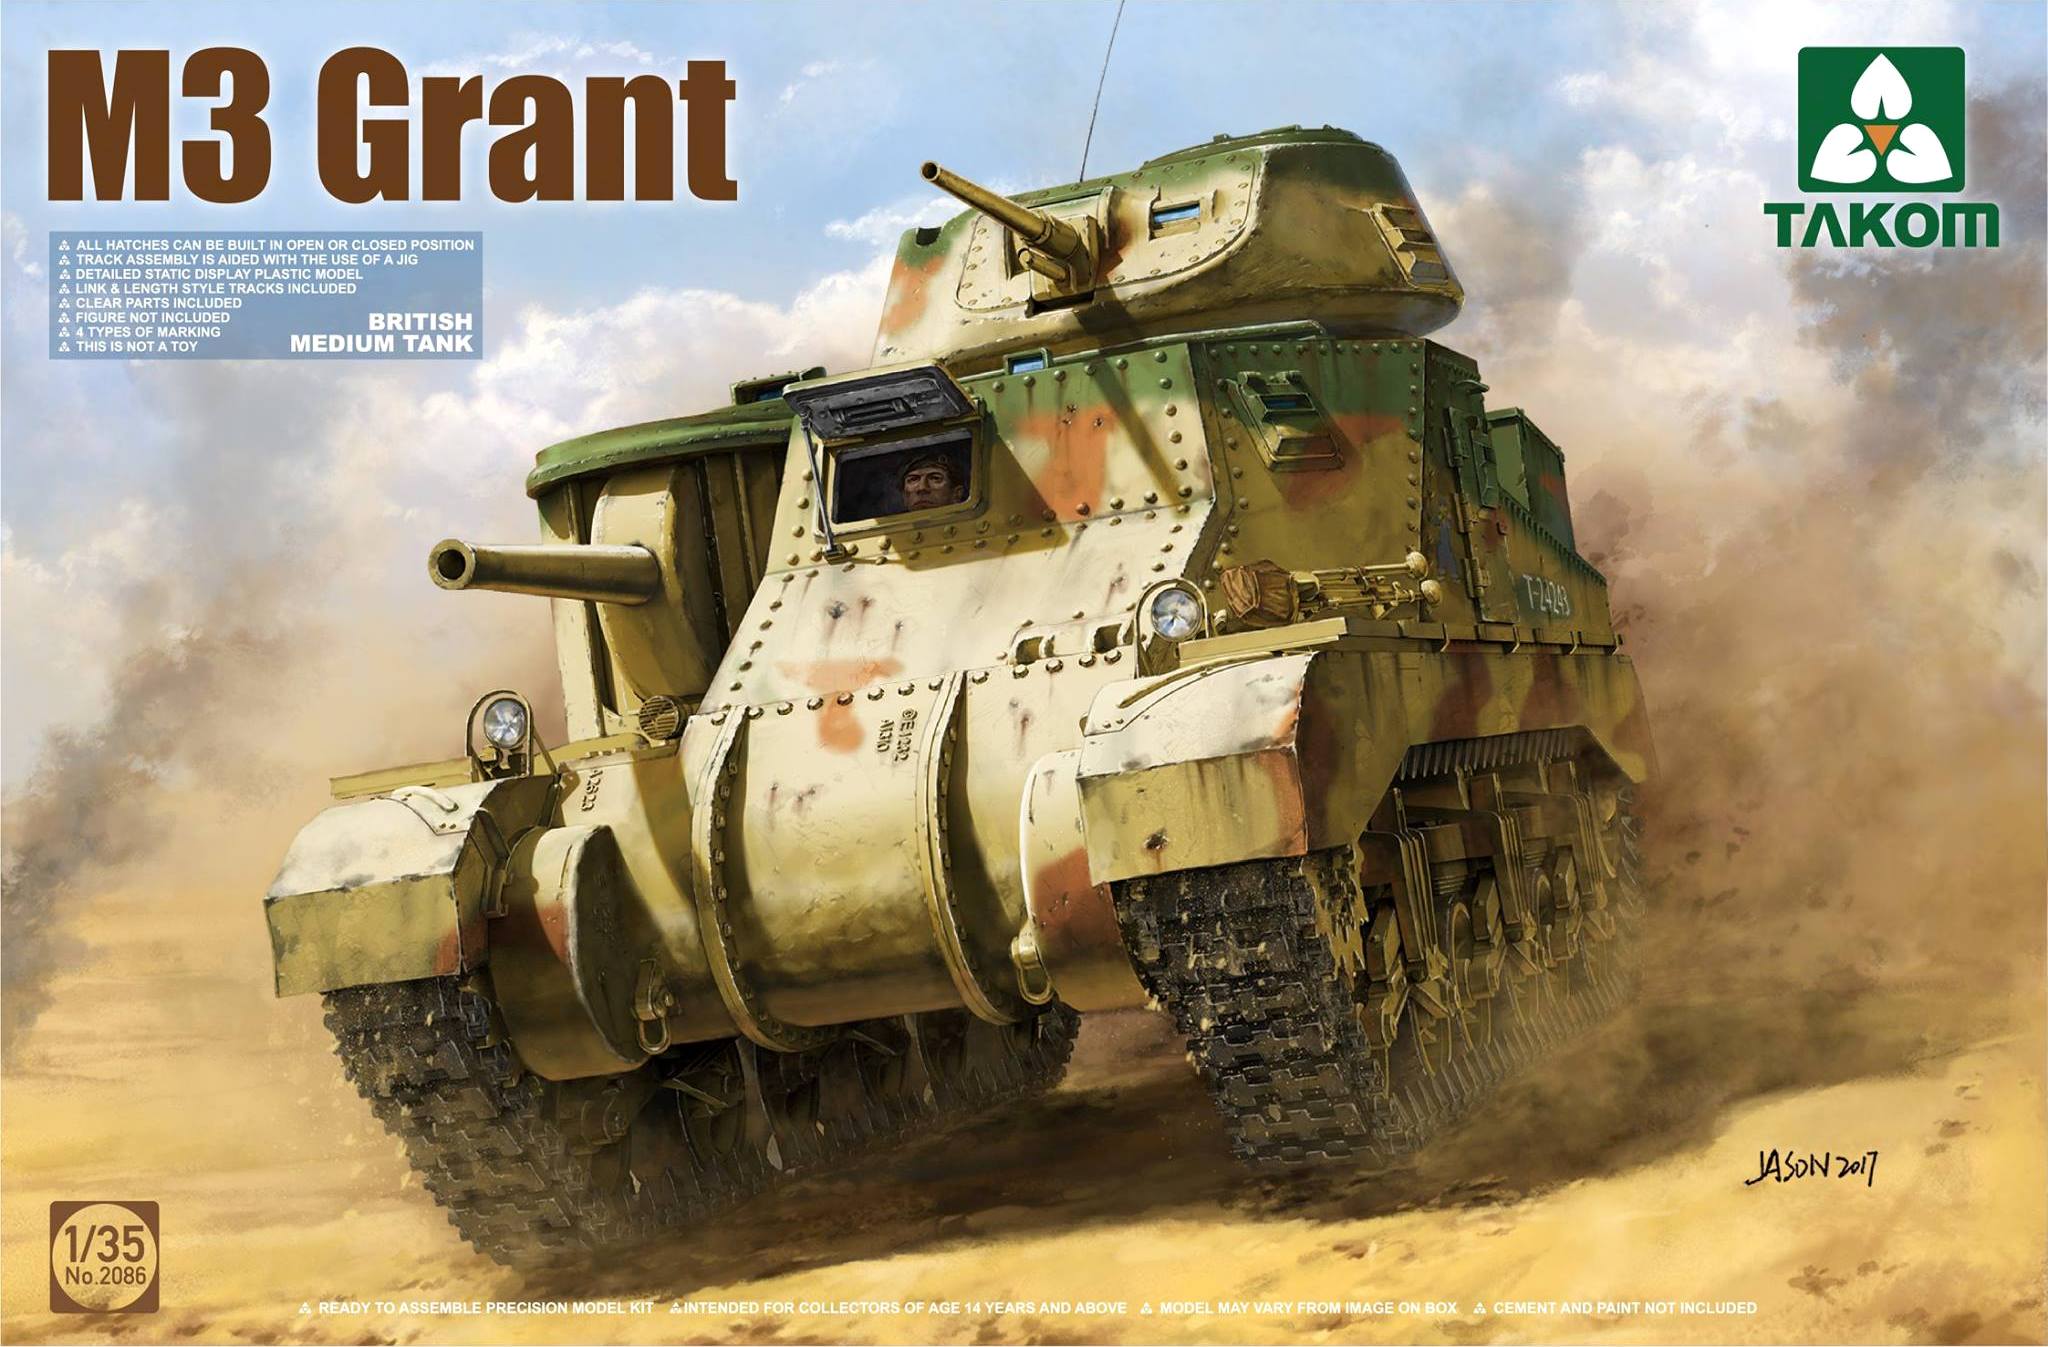 British medium tank M3 GRANT